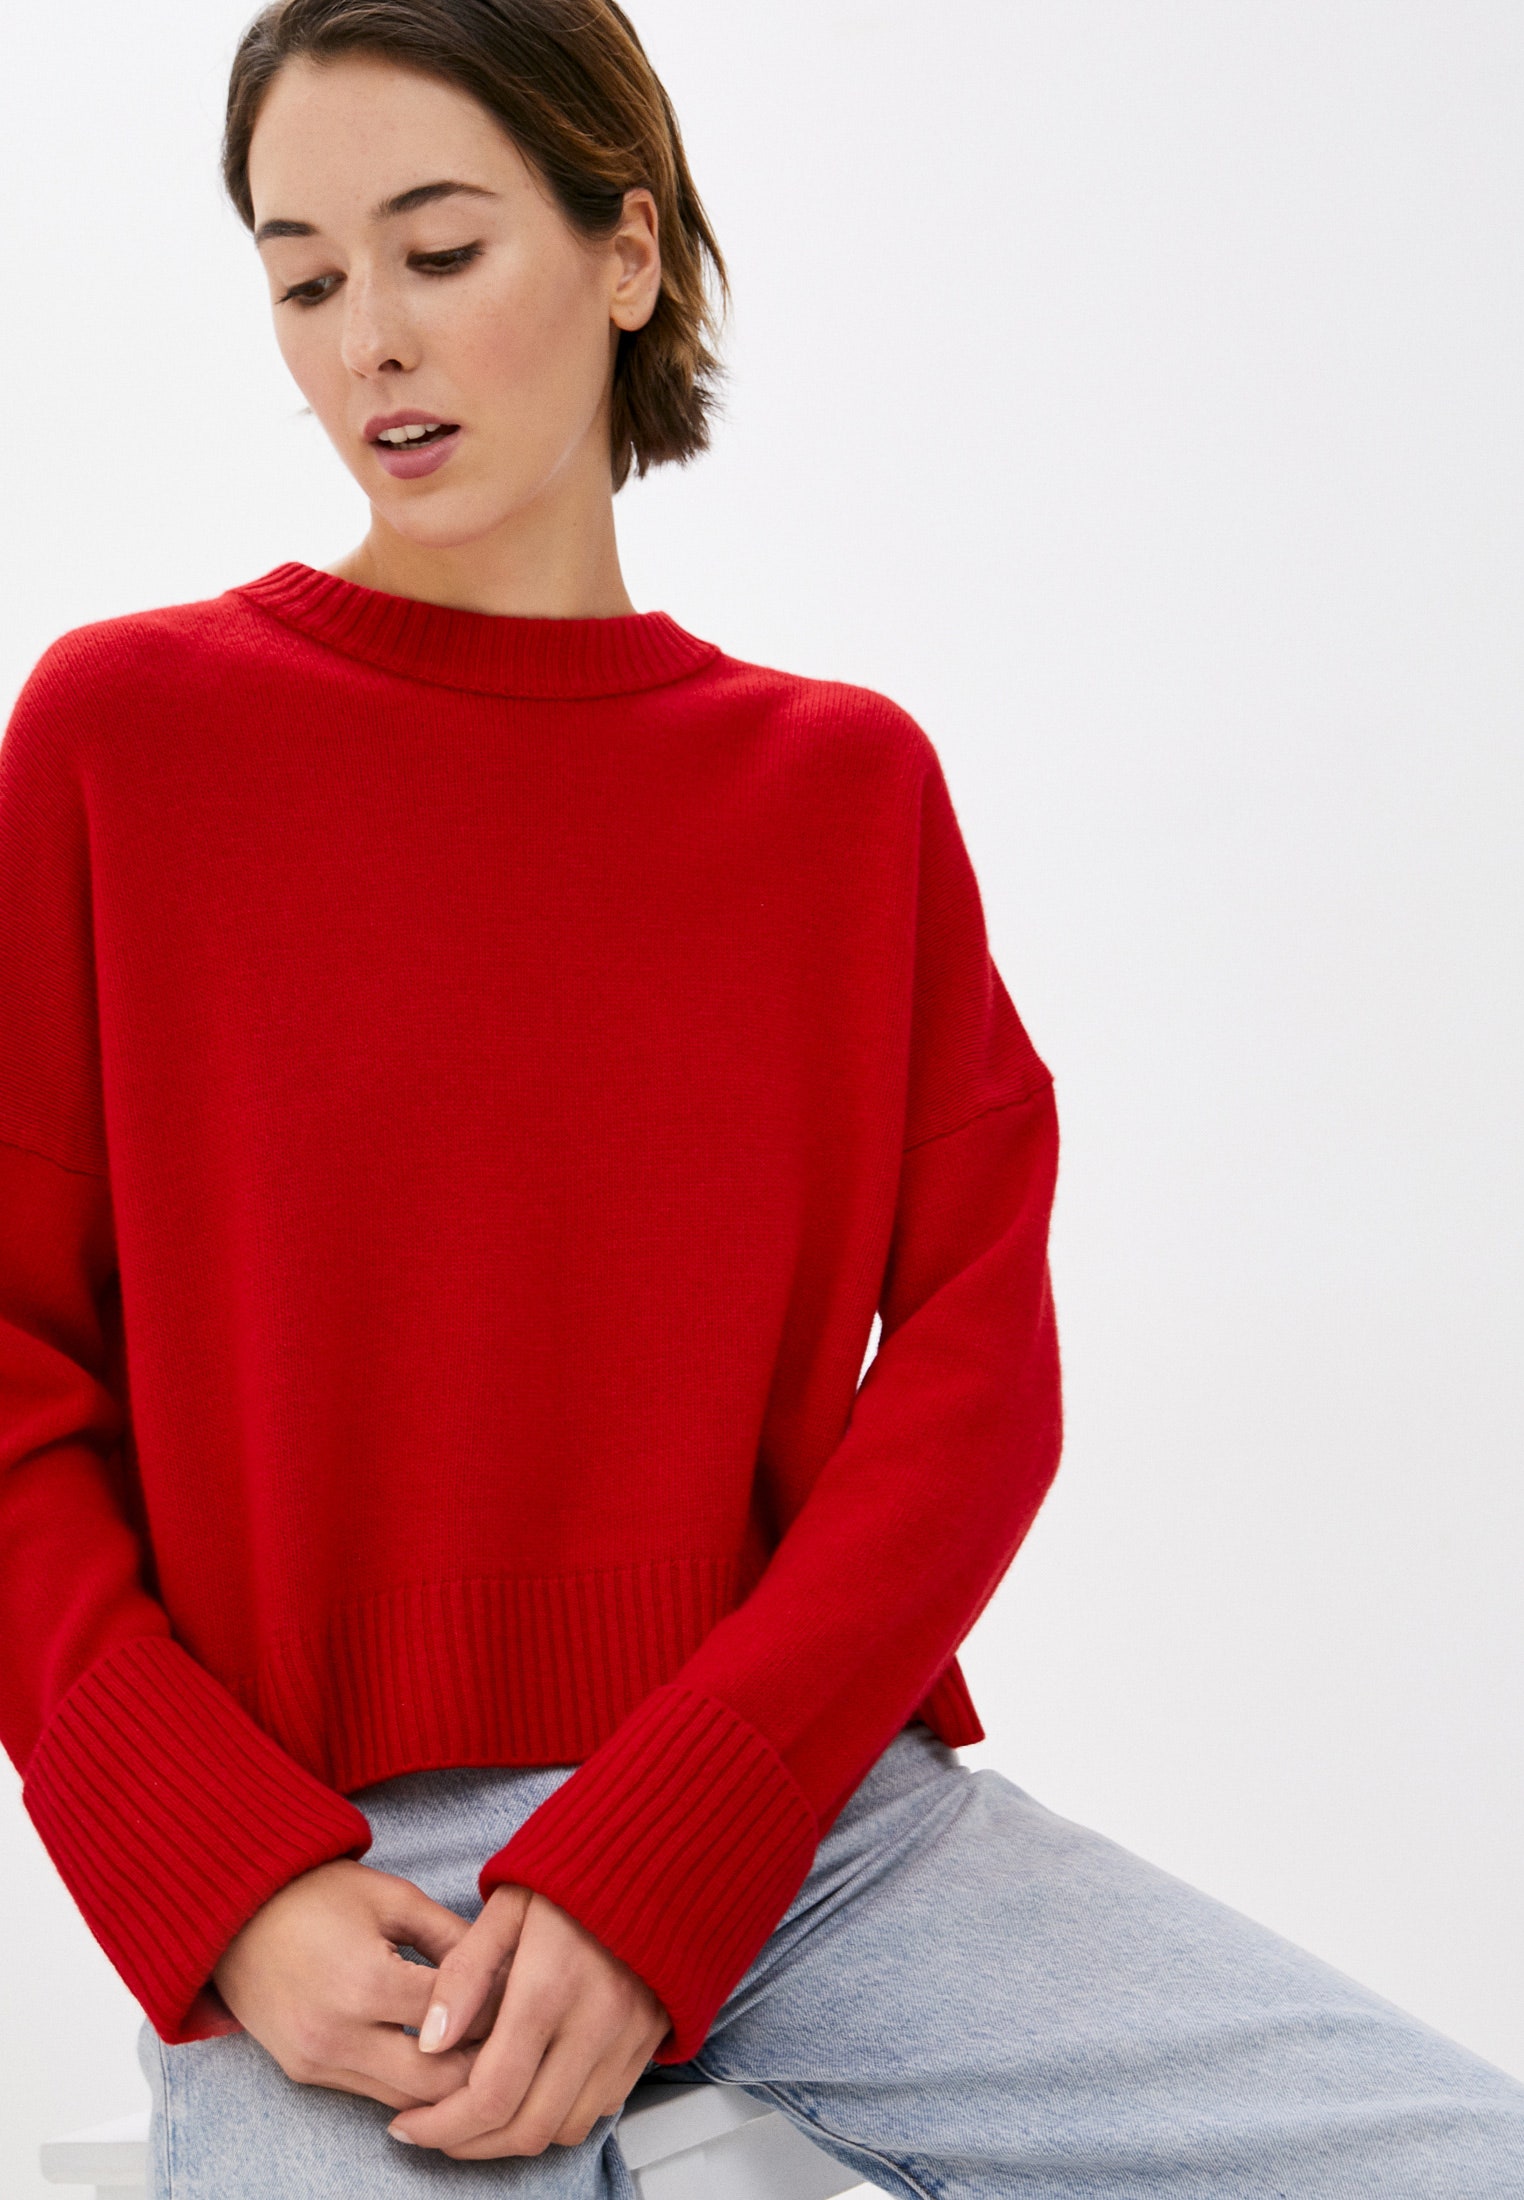 10 красных вязаных свитеров для встречи Нового года и повседневных образов